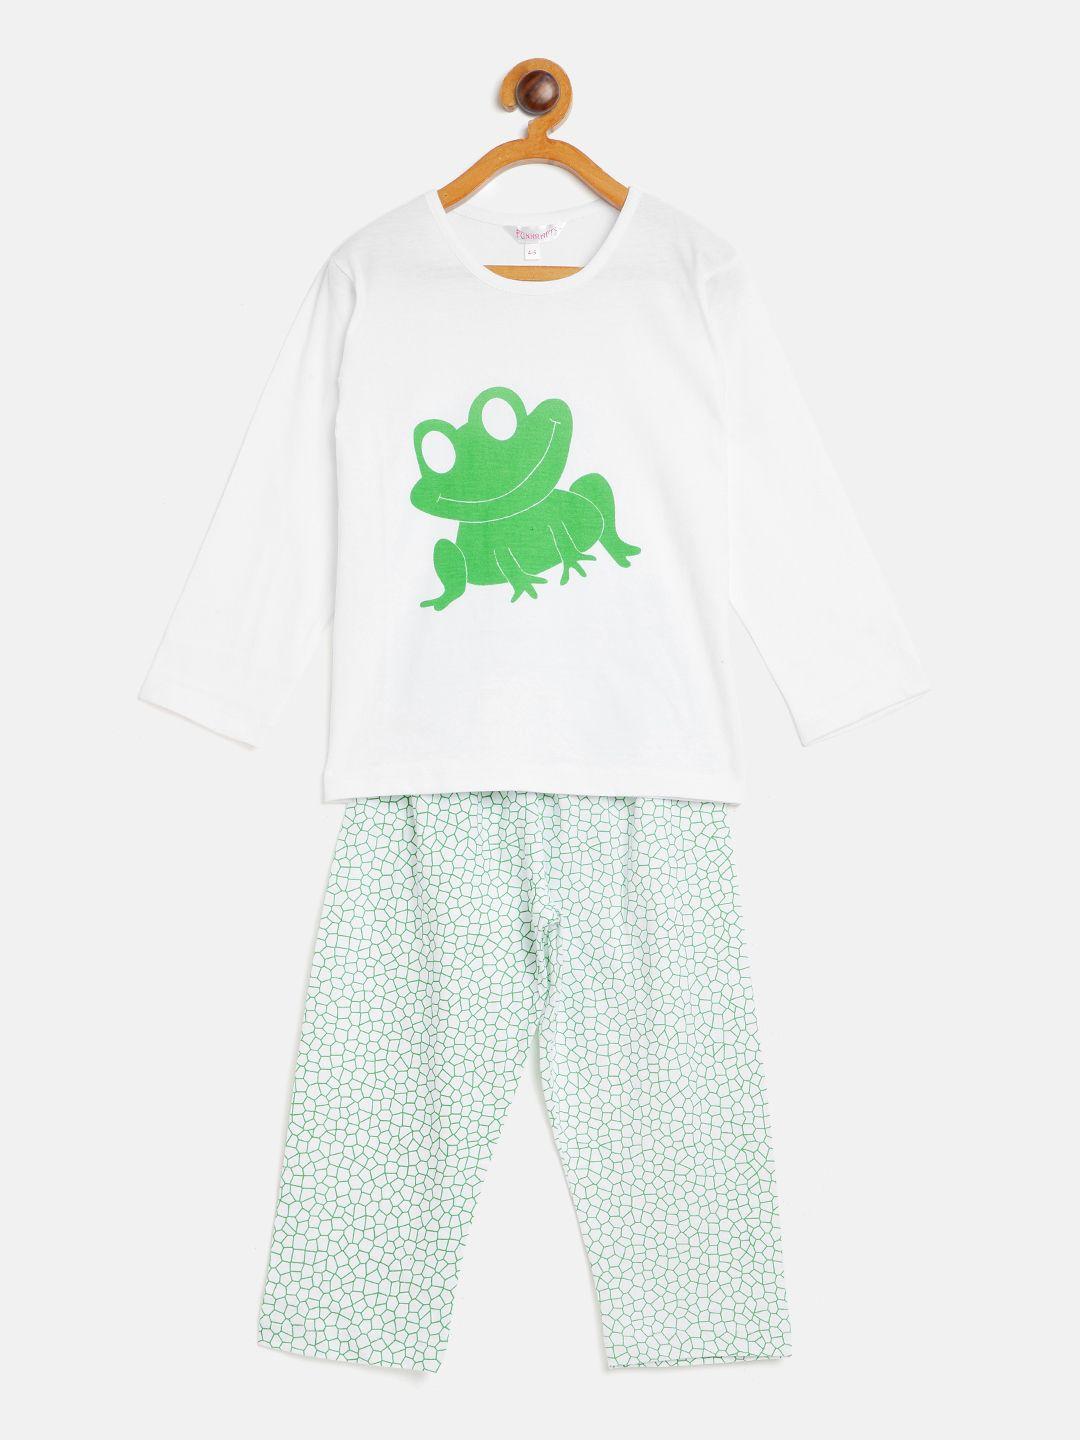 funkrafts kids white & green printed night suit